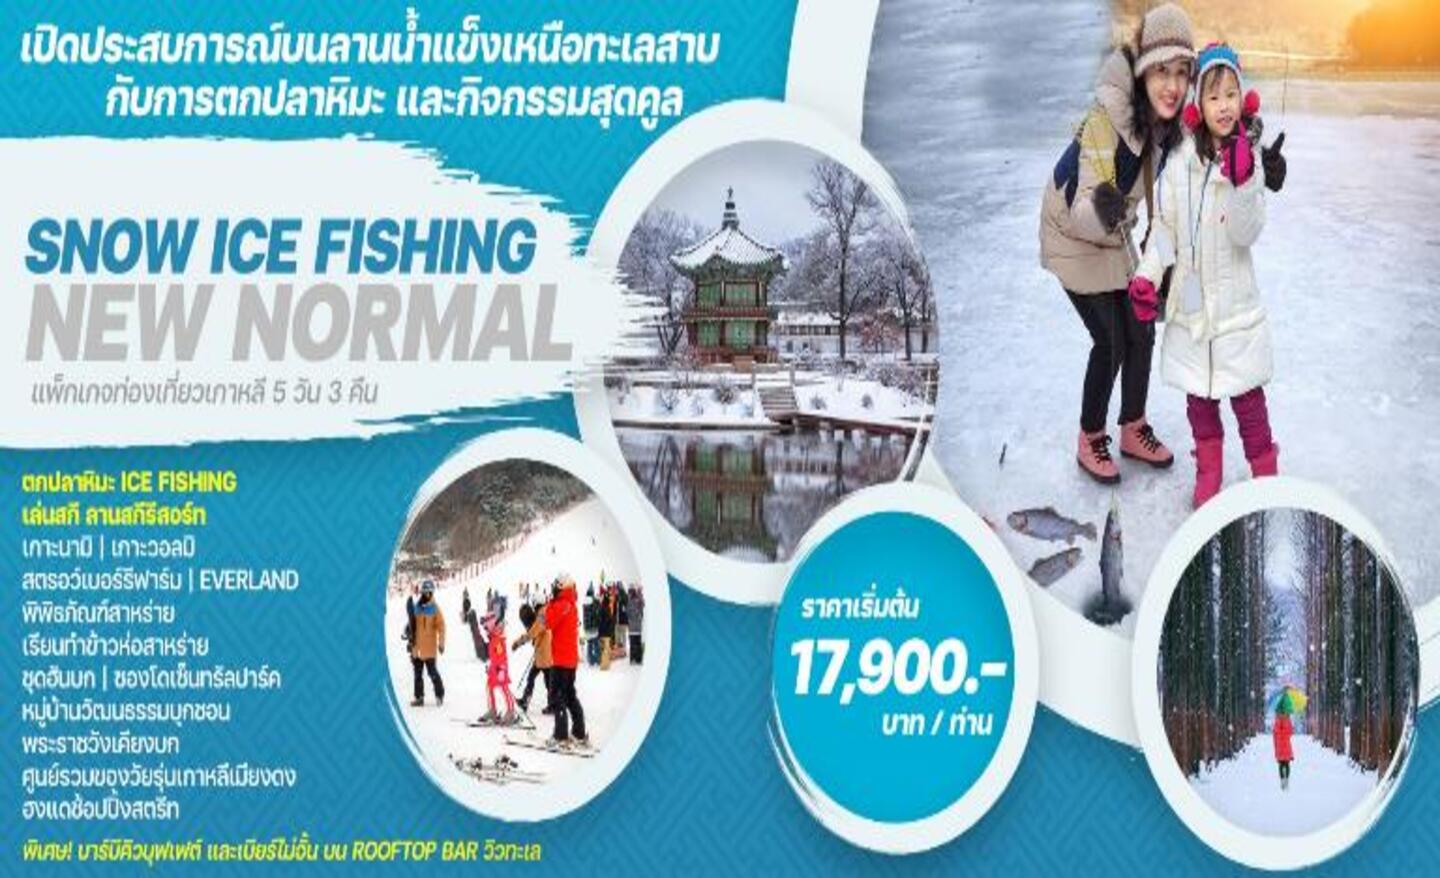 ทัวร์เกาหลี Snow Ice Fishing New Normal (ม.ค.66)